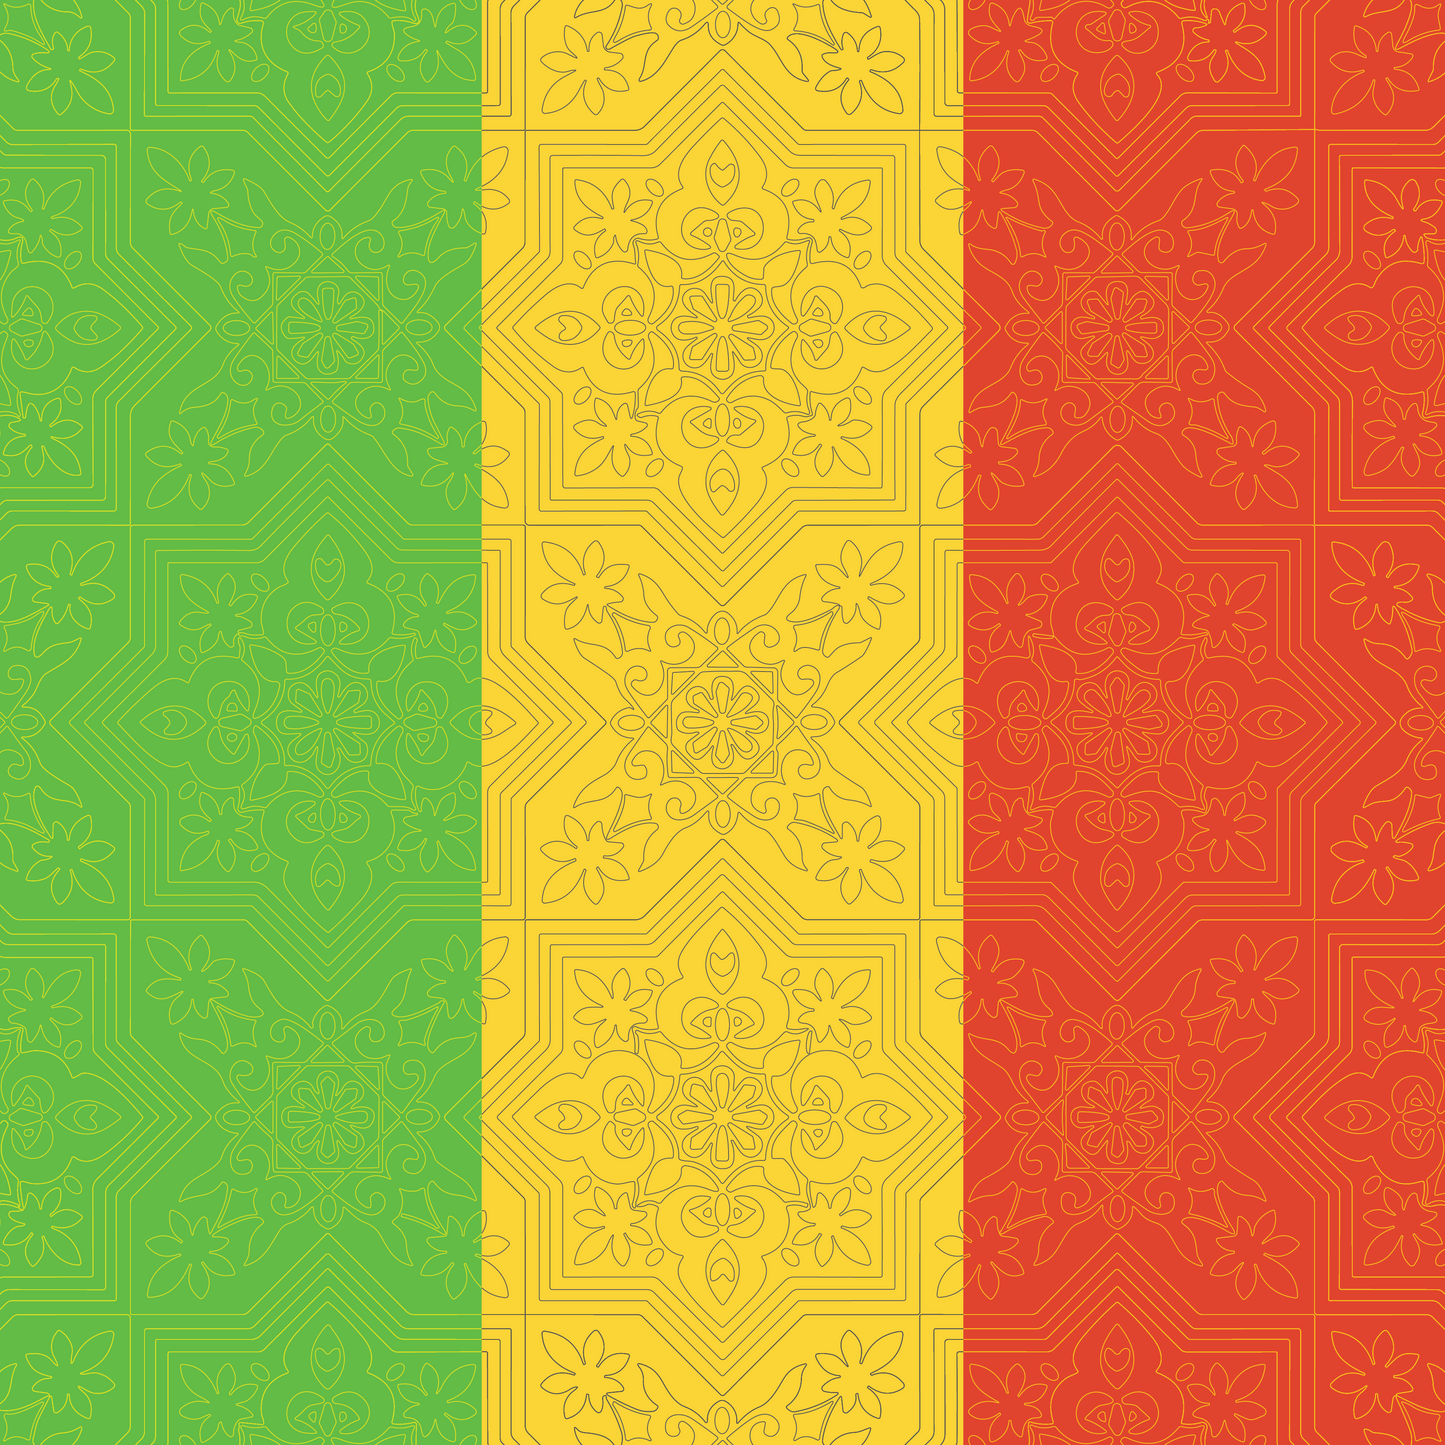 Mali Flag Bandana